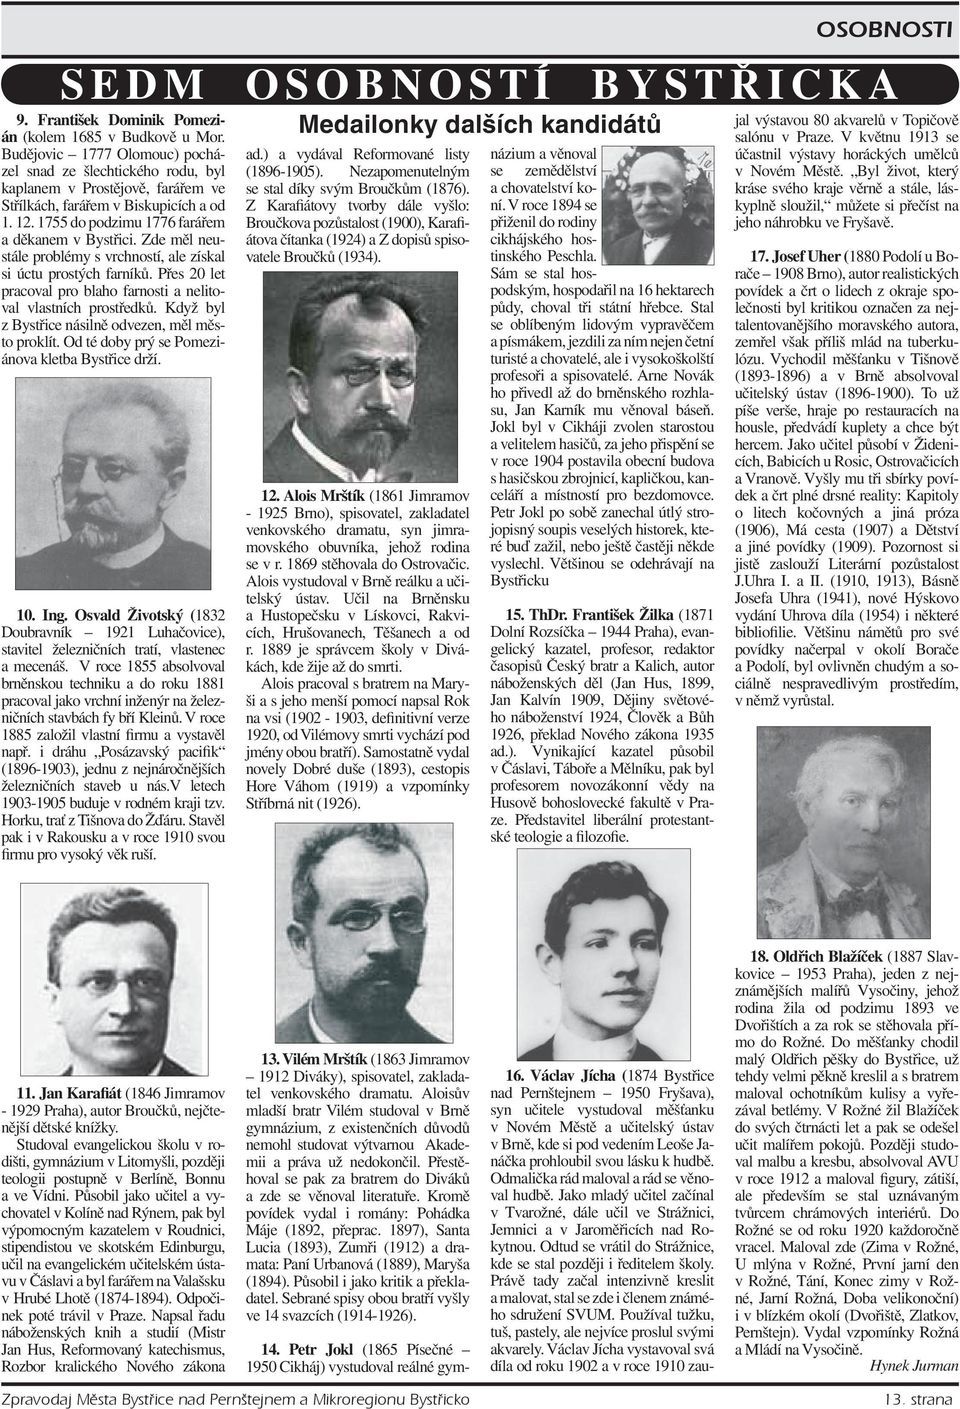 Alois Mrštík (1861 Jimramov - 1925 Brno), spisovatel, zakladatel venkovského dramatu, syn jimramovského obuvníka, jehož rodina se v r. 1869 stěhovala do Ostrovačic.